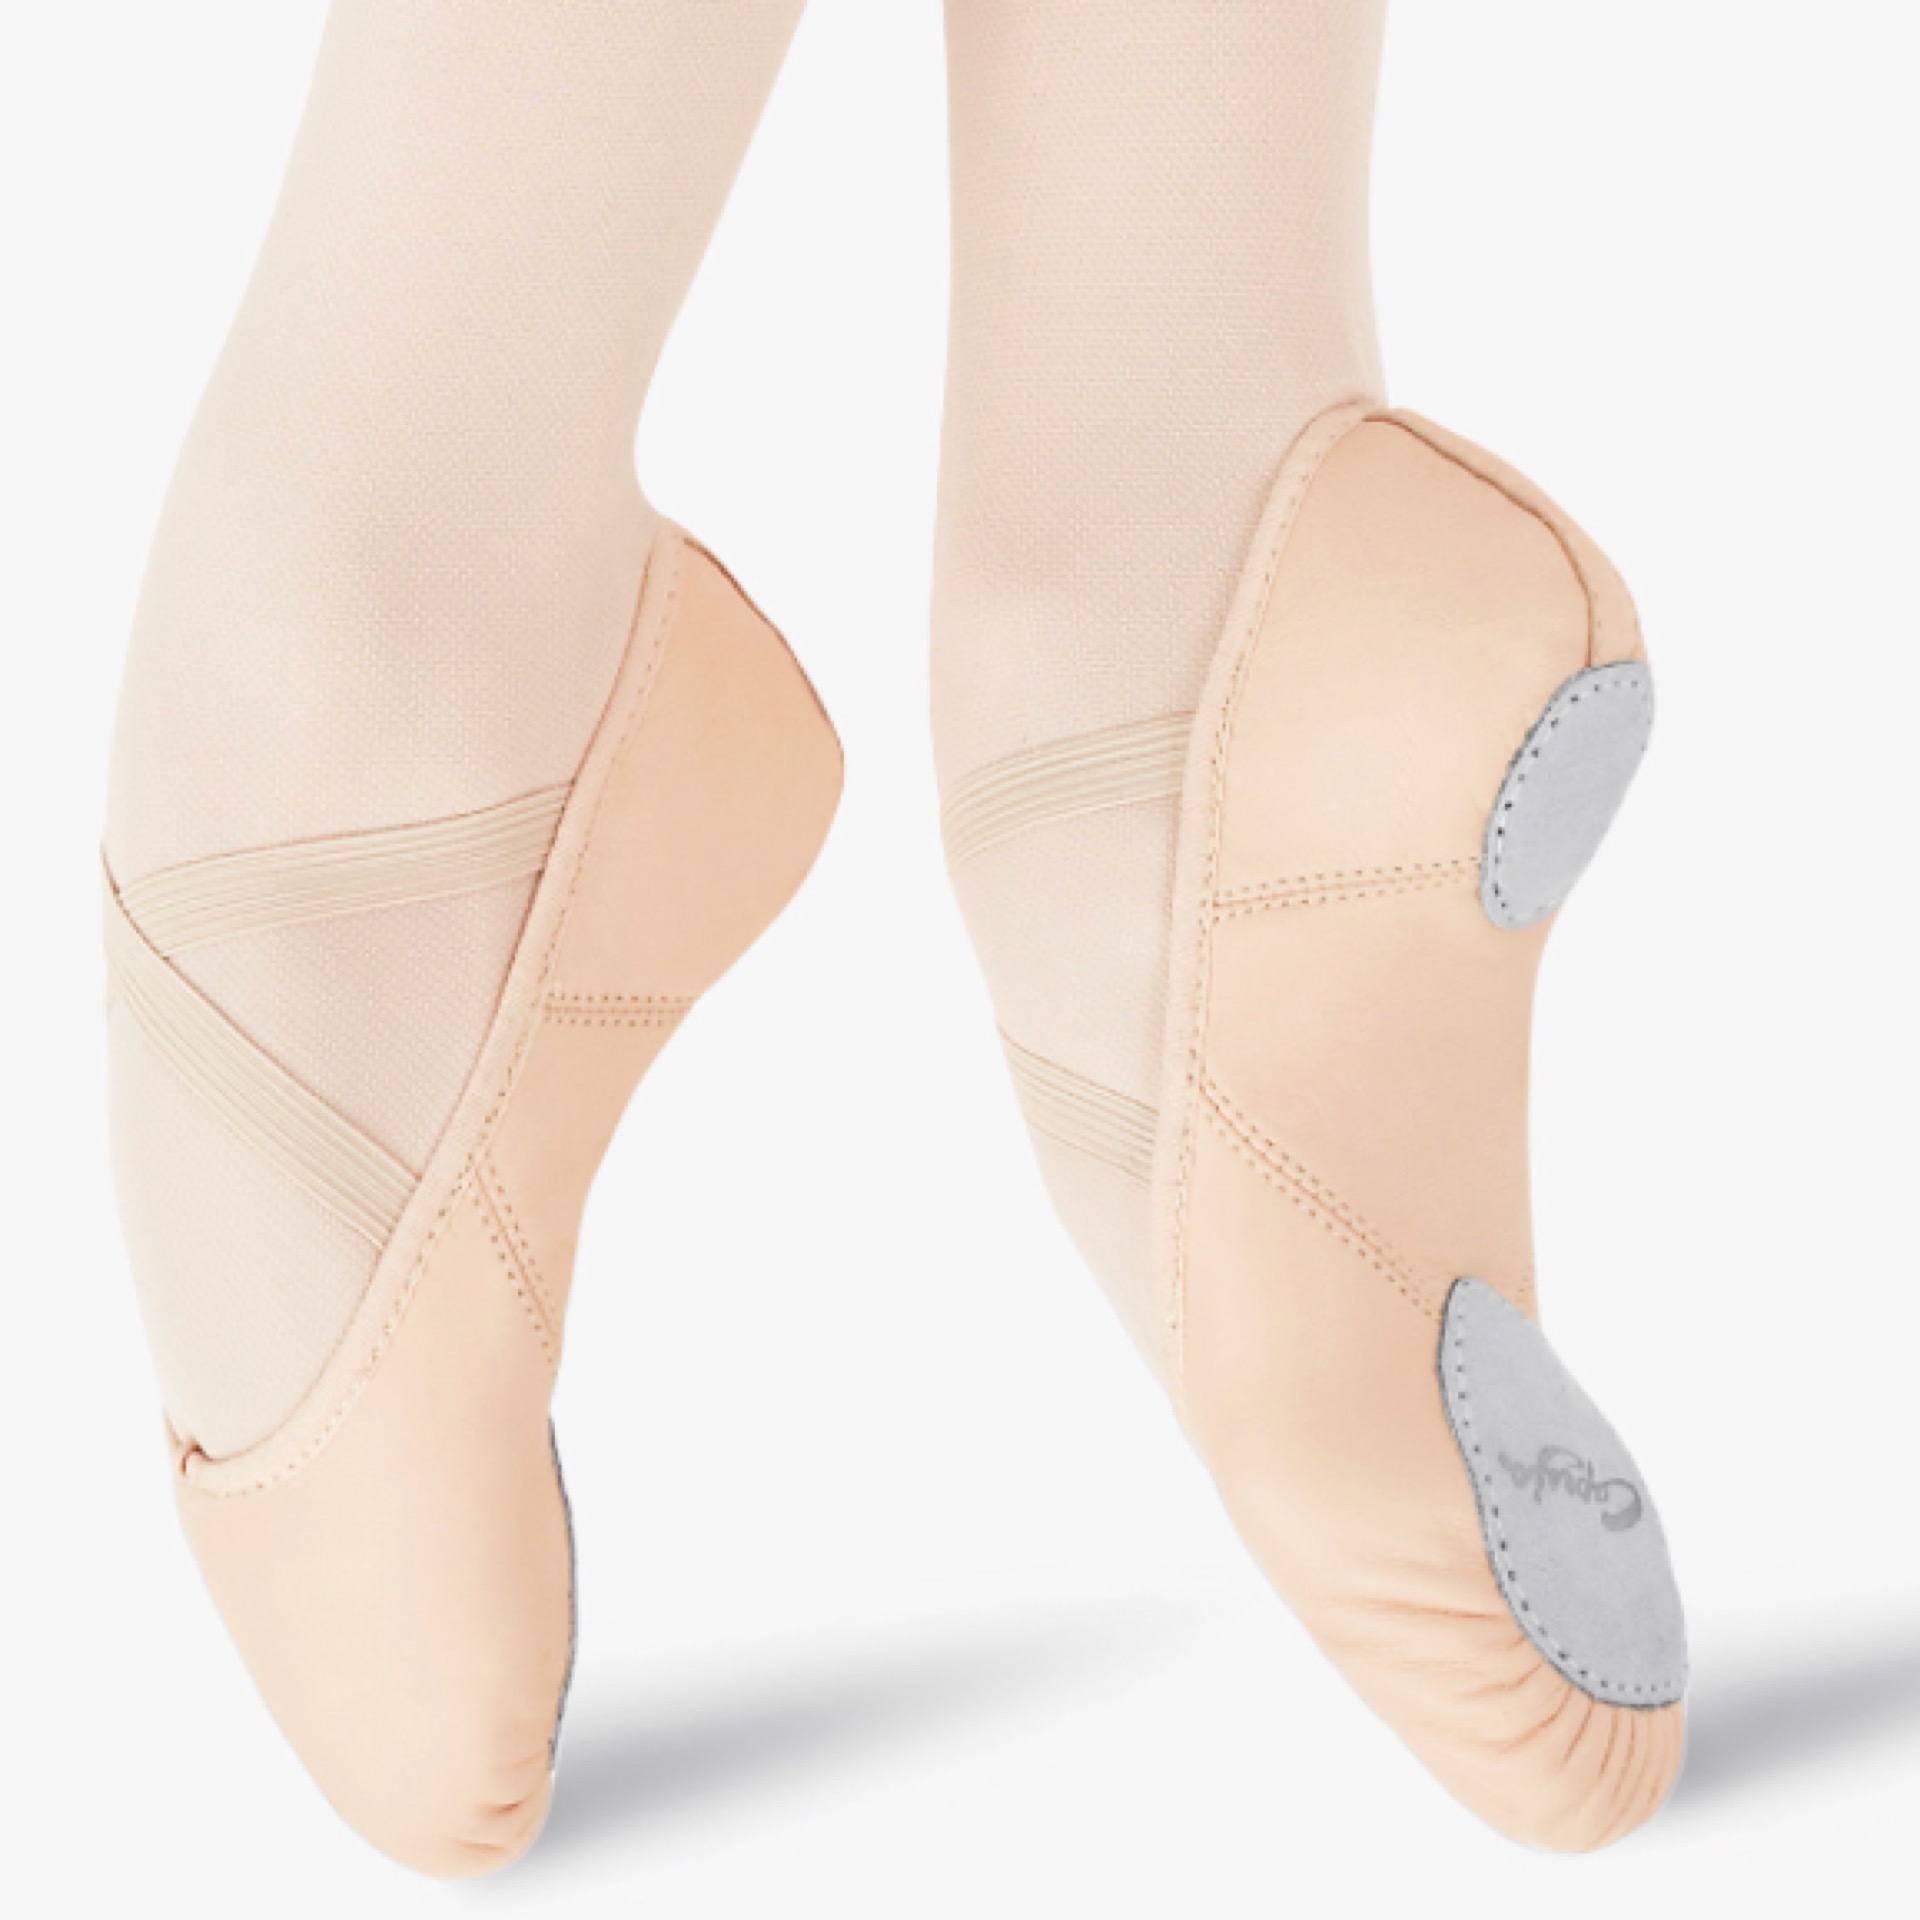 White Leather Split Sole Ballet Shoe Fits 13.5 Capezio CG2002 Women's Size 3M 